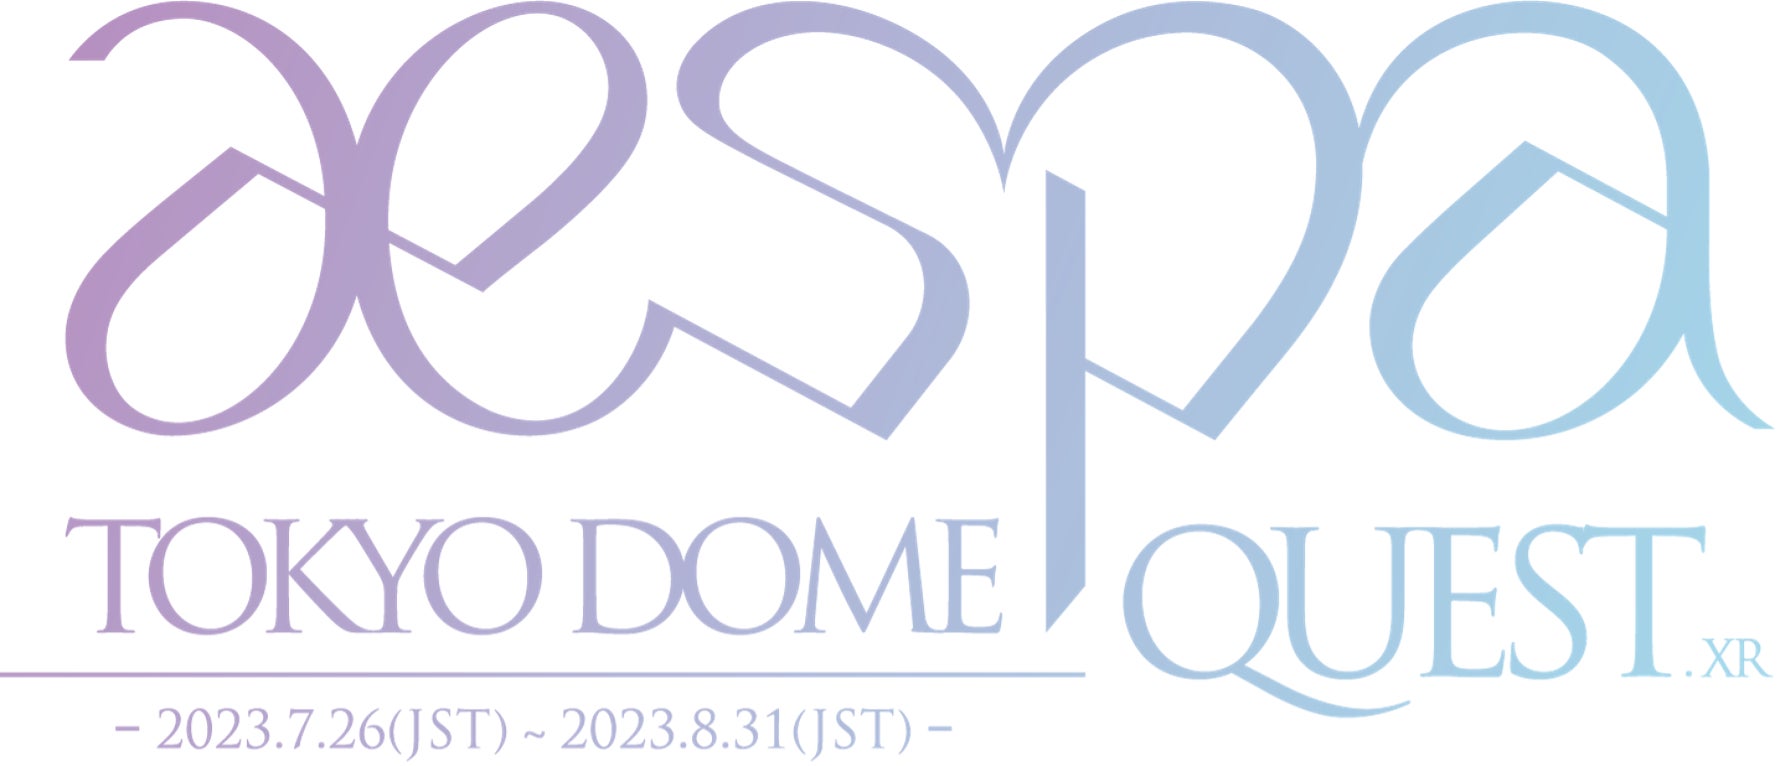 メタバースグループaespa（エスパ）がリアル・バーチャルの東京ドームと世界初のXRコラボ！「aespa_TOKYO DOME QUEST.xr」を実施！